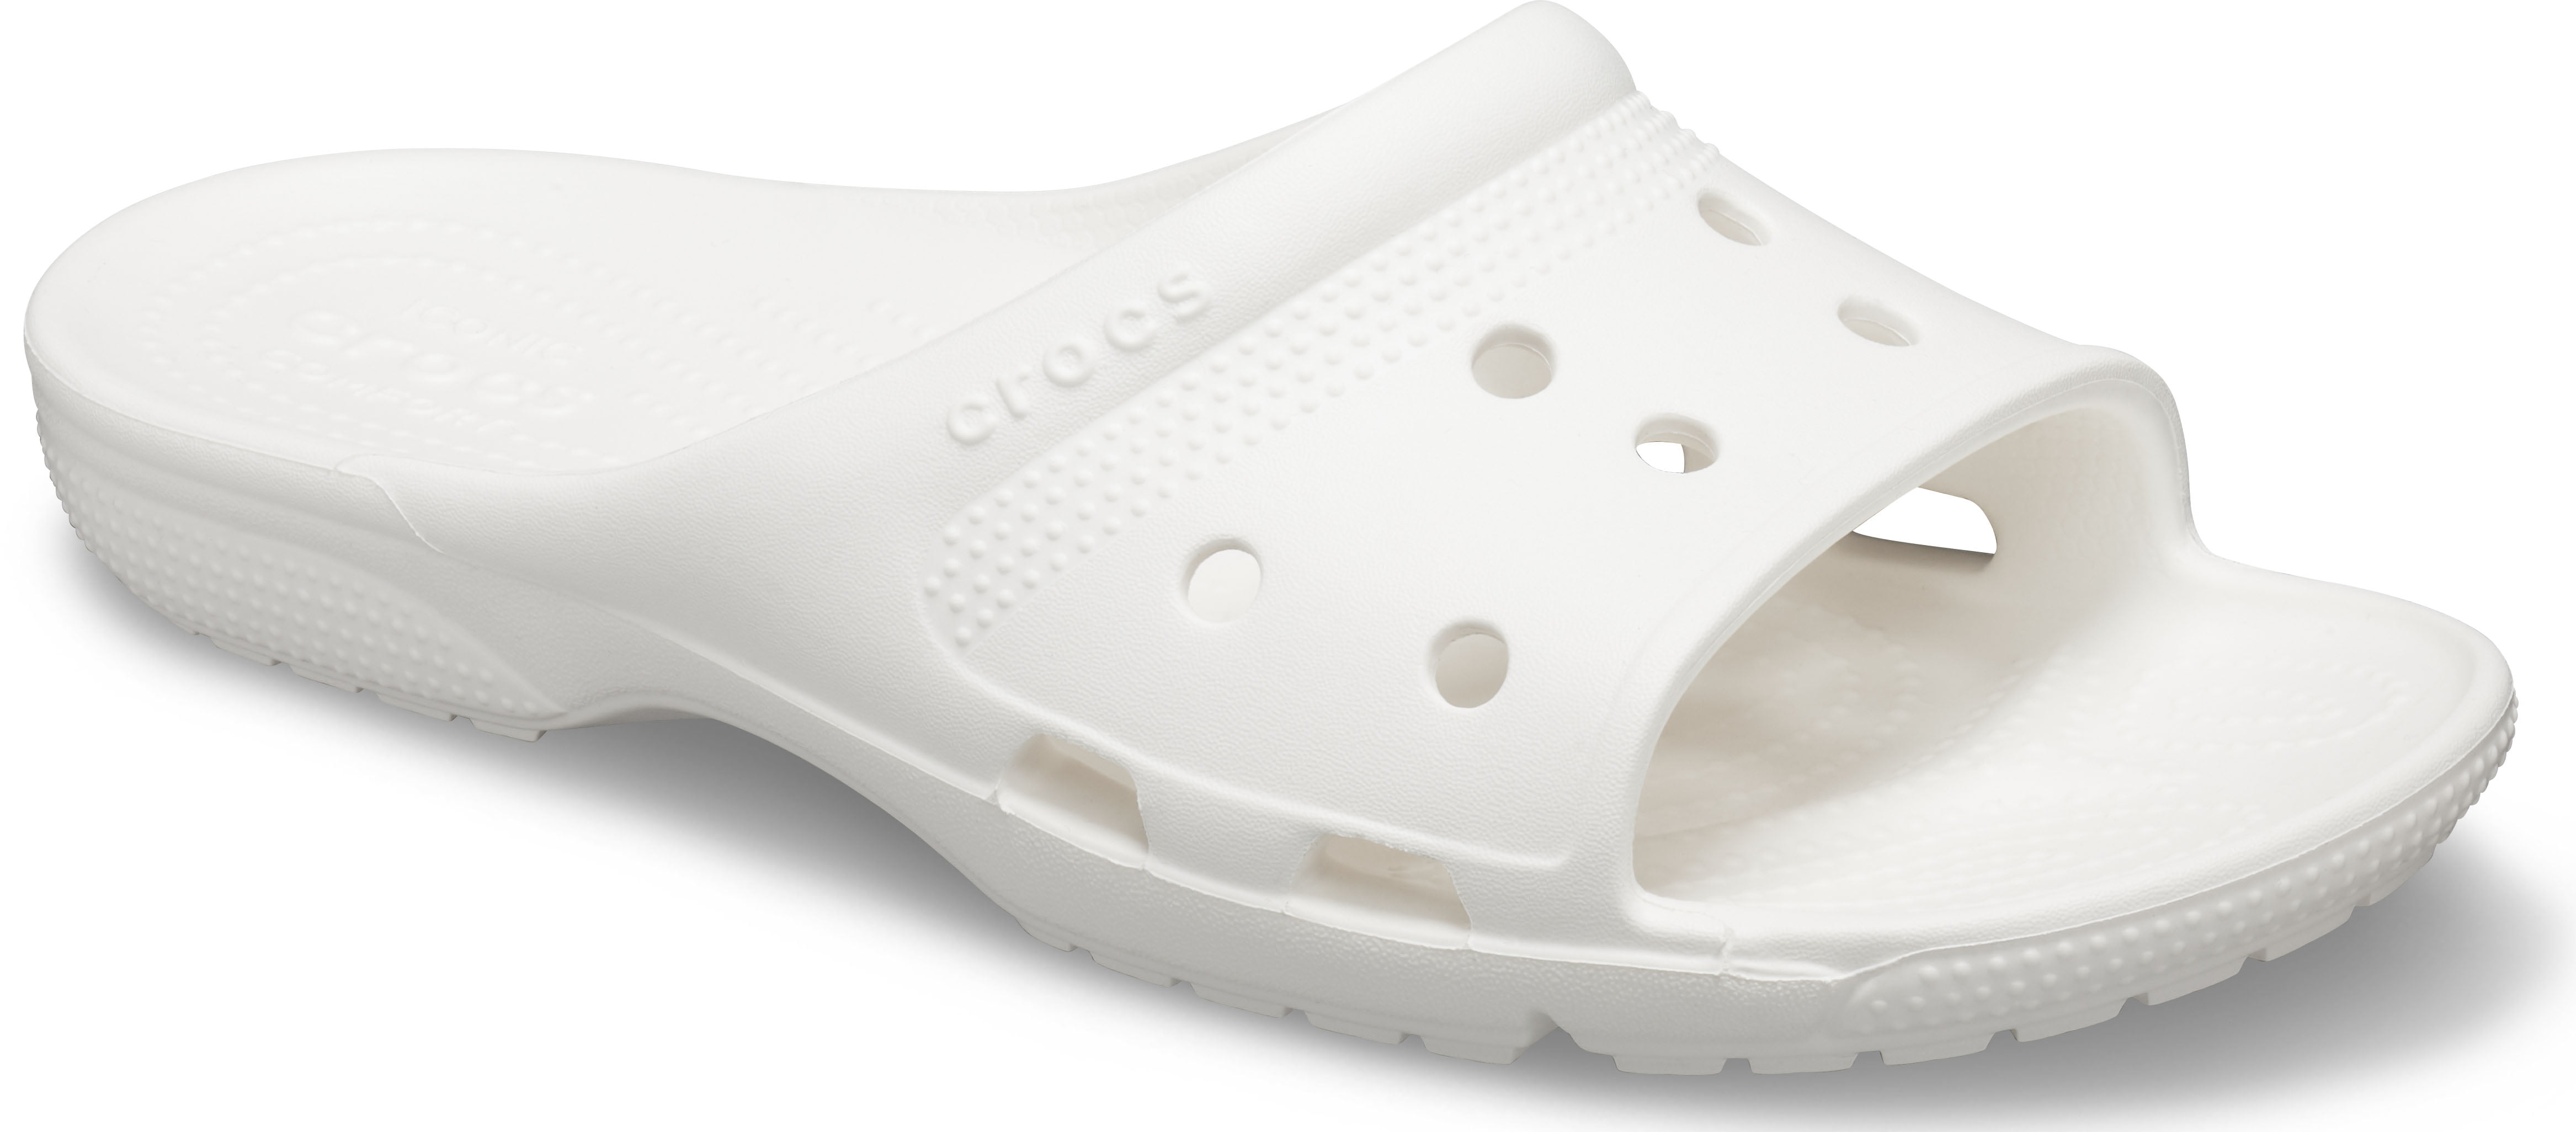 croc slide on shoes